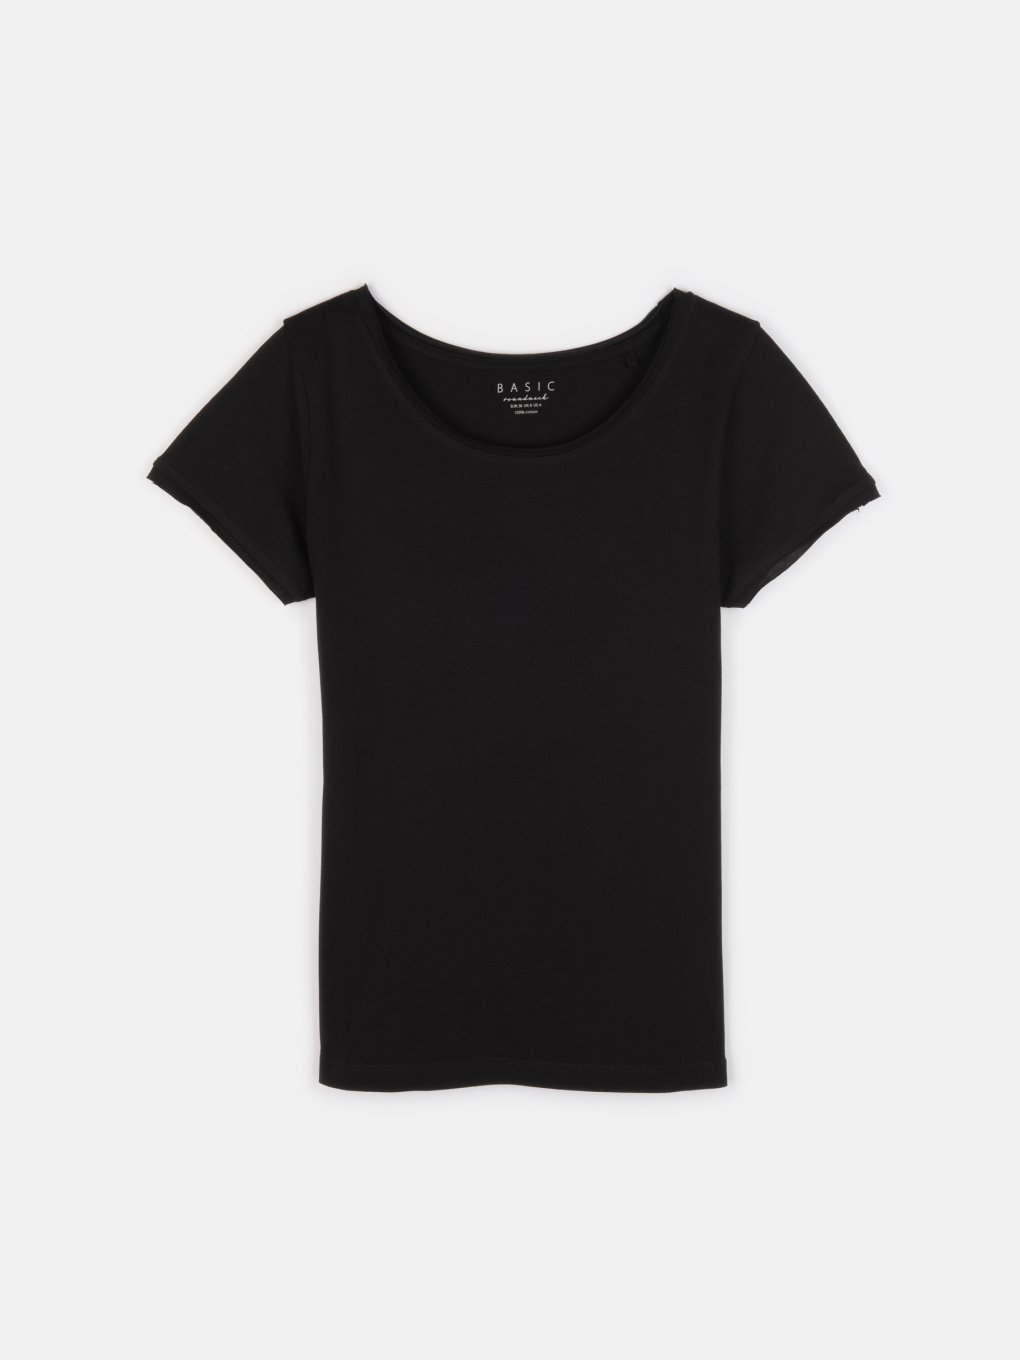 Základní bavlněné basic tričko s neopracovaným lemem dámské